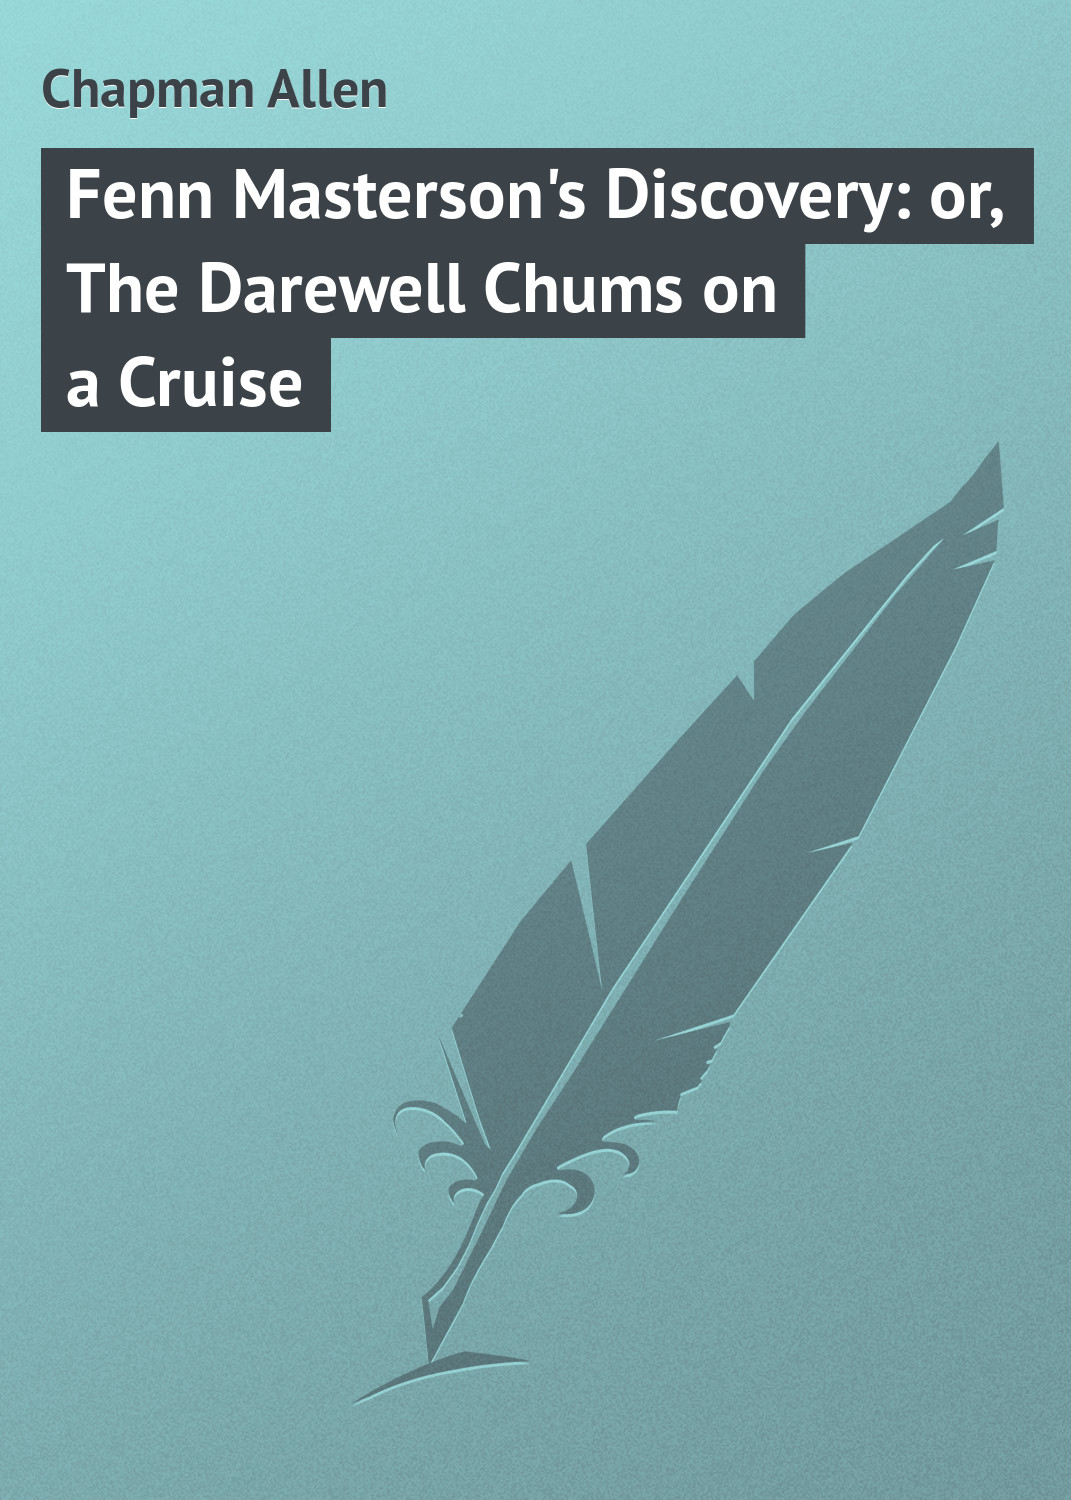 Книга Fenn Masterson's Discovery: or, The Darewell Chums on a Cruise из серии , созданная Allen Chapman, может относится к жанру Классические детективы, Зарубежные детективы, Зарубежная классика. Стоимость электронной книги Fenn Masterson's Discovery: or, The Darewell Chums on a Cruise с идентификатором 23148691 составляет 5.99 руб.